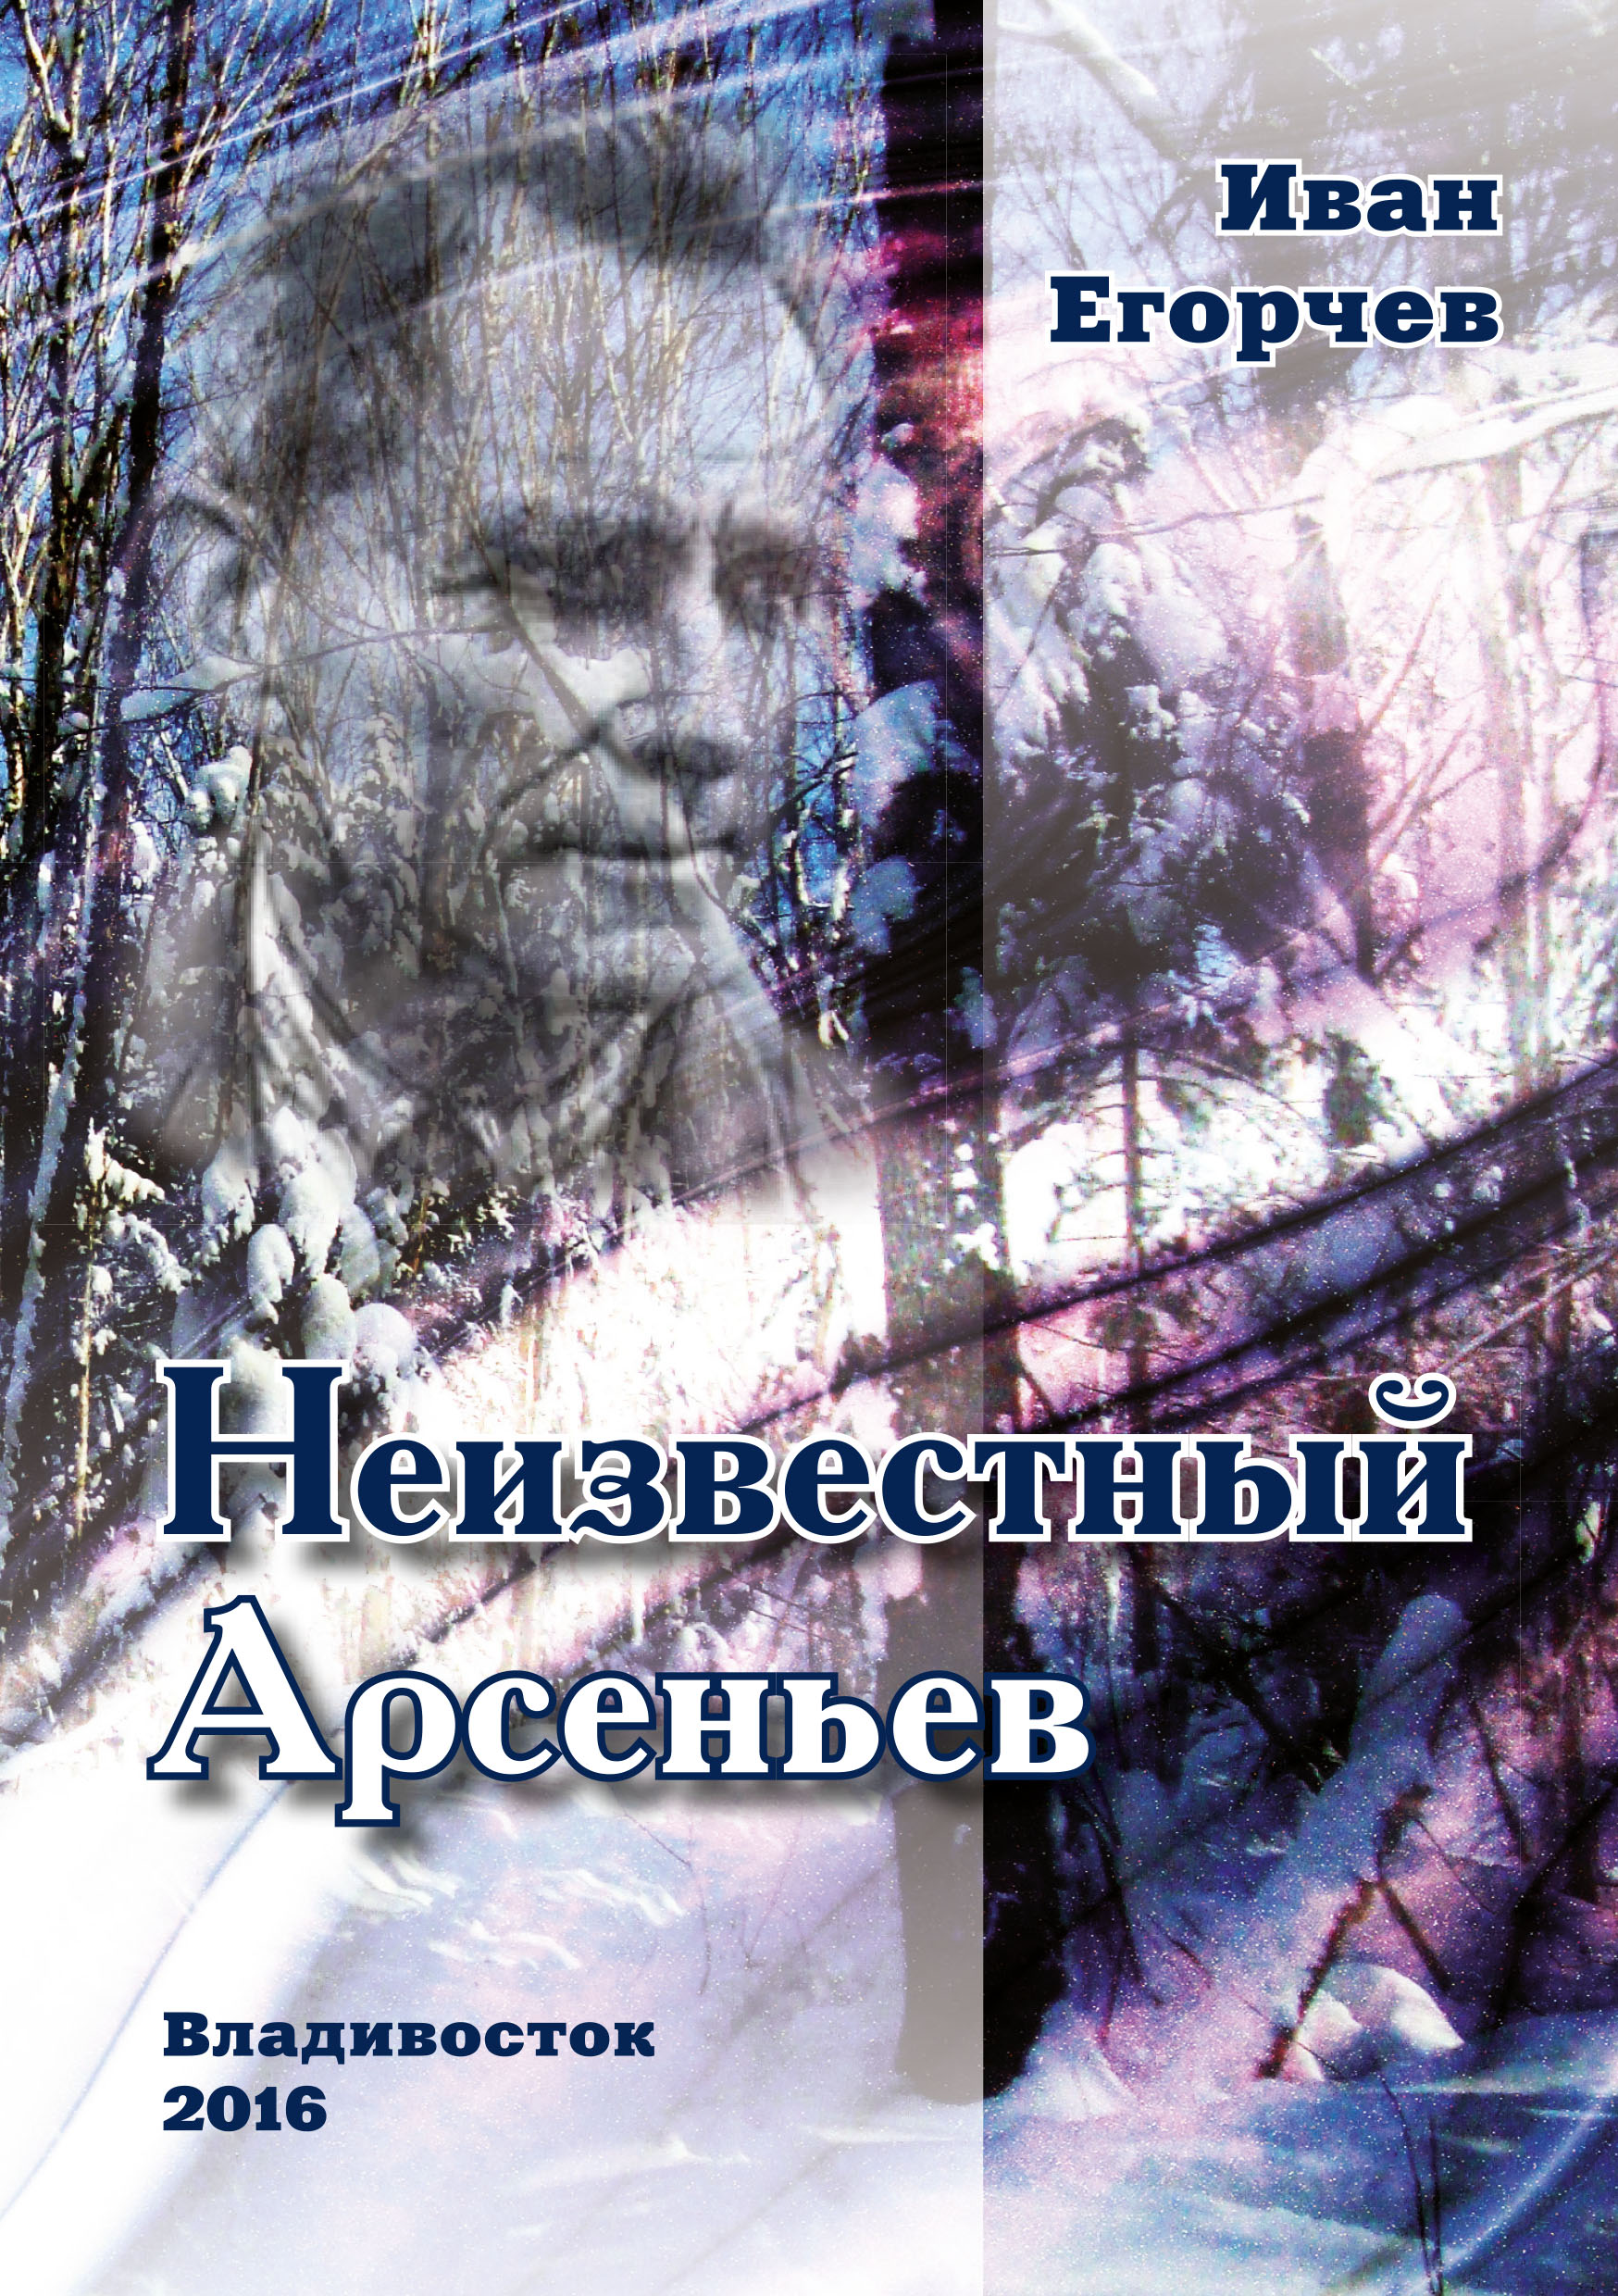 Книга Неизвестный Арсеньев из серии , созданная Иван Егорчев, может относится к жанру Биографии и Мемуары. Стоимость электронной книги Неизвестный Арсеньев с идентификатором 46784354 составляет 89.90 руб.